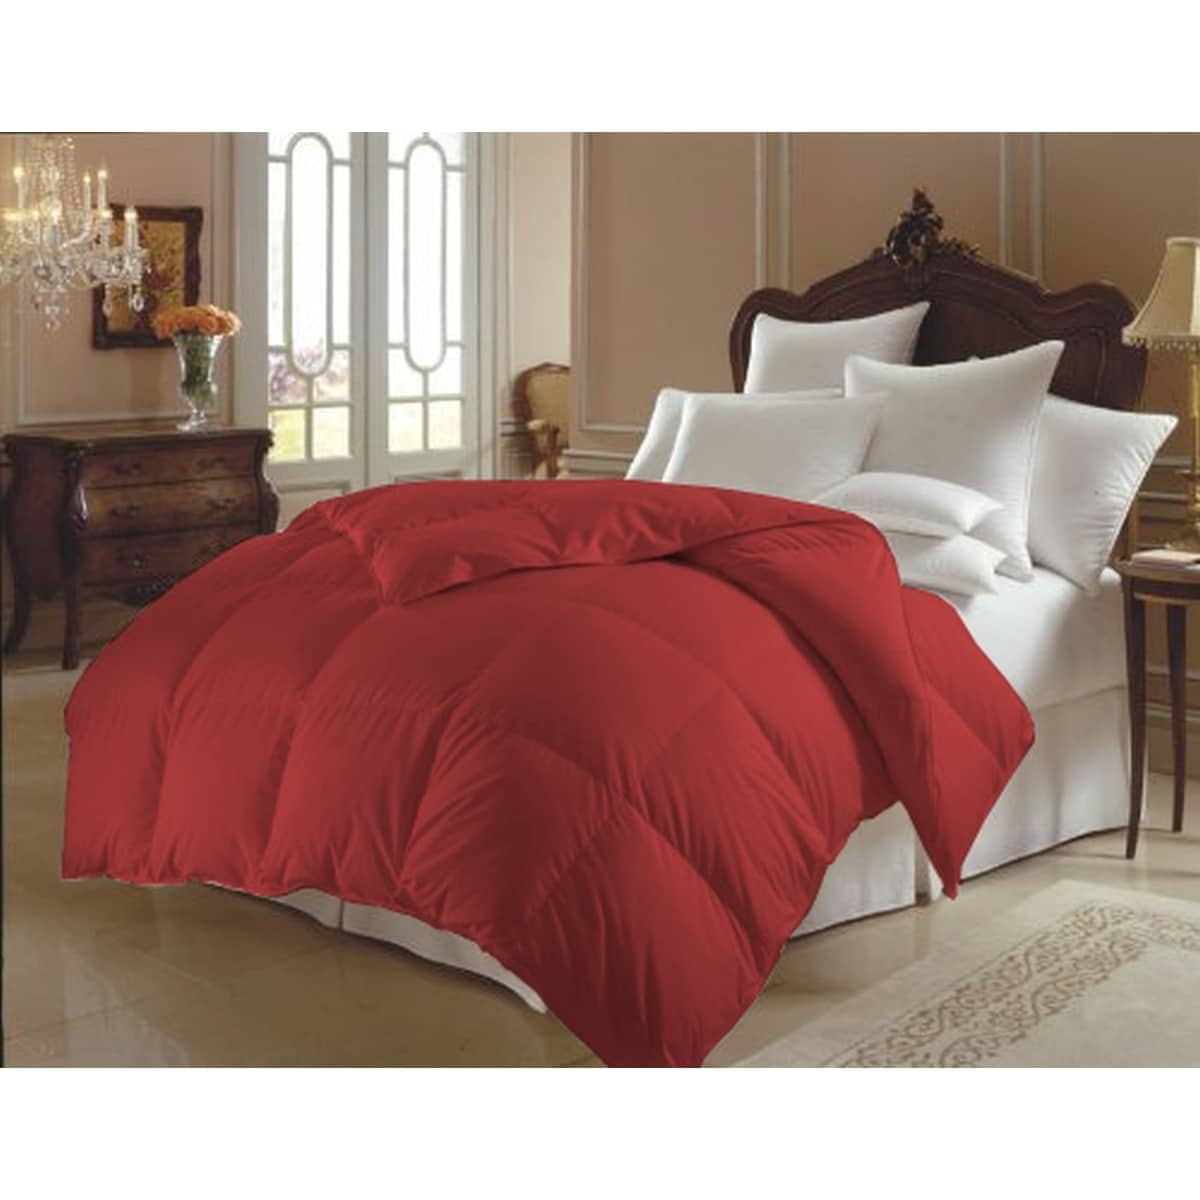 Shop Elegant Comfort Hypoallergenic Double Filled Comforter Duvet